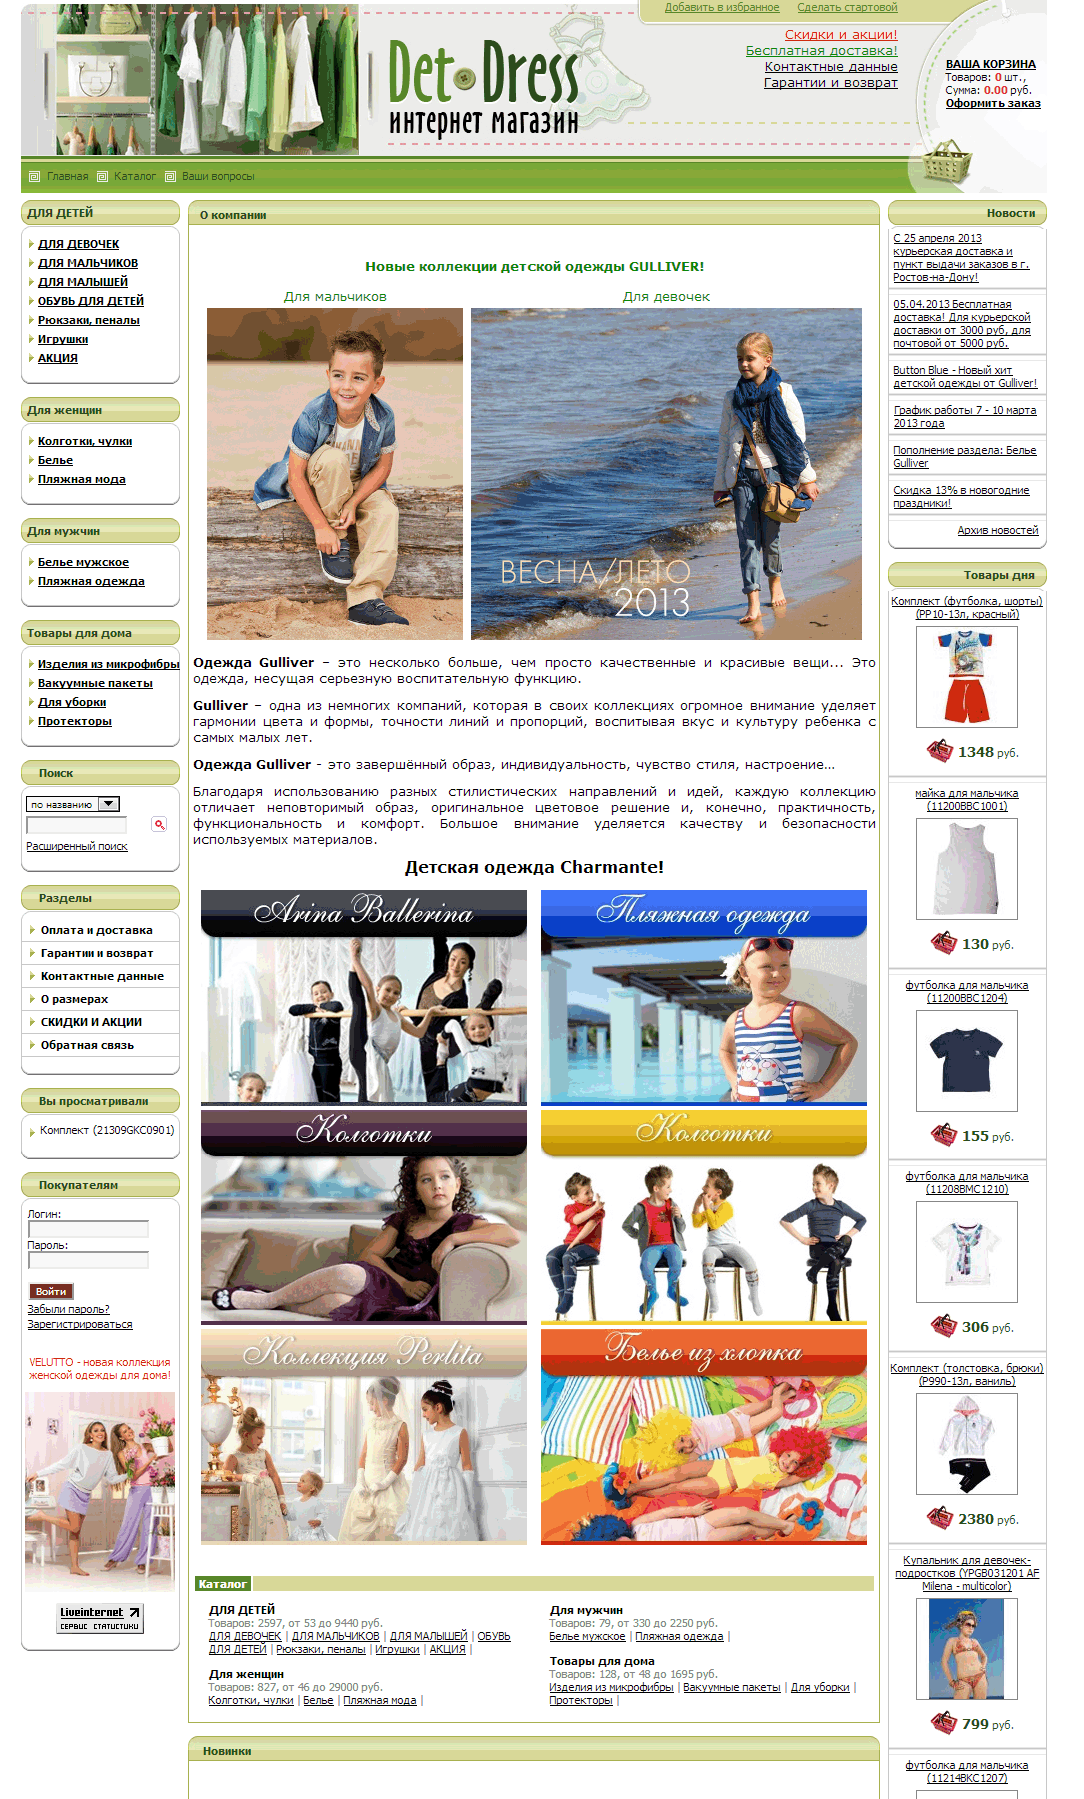 Cозданый интернет-магазин детской одежды под заказ